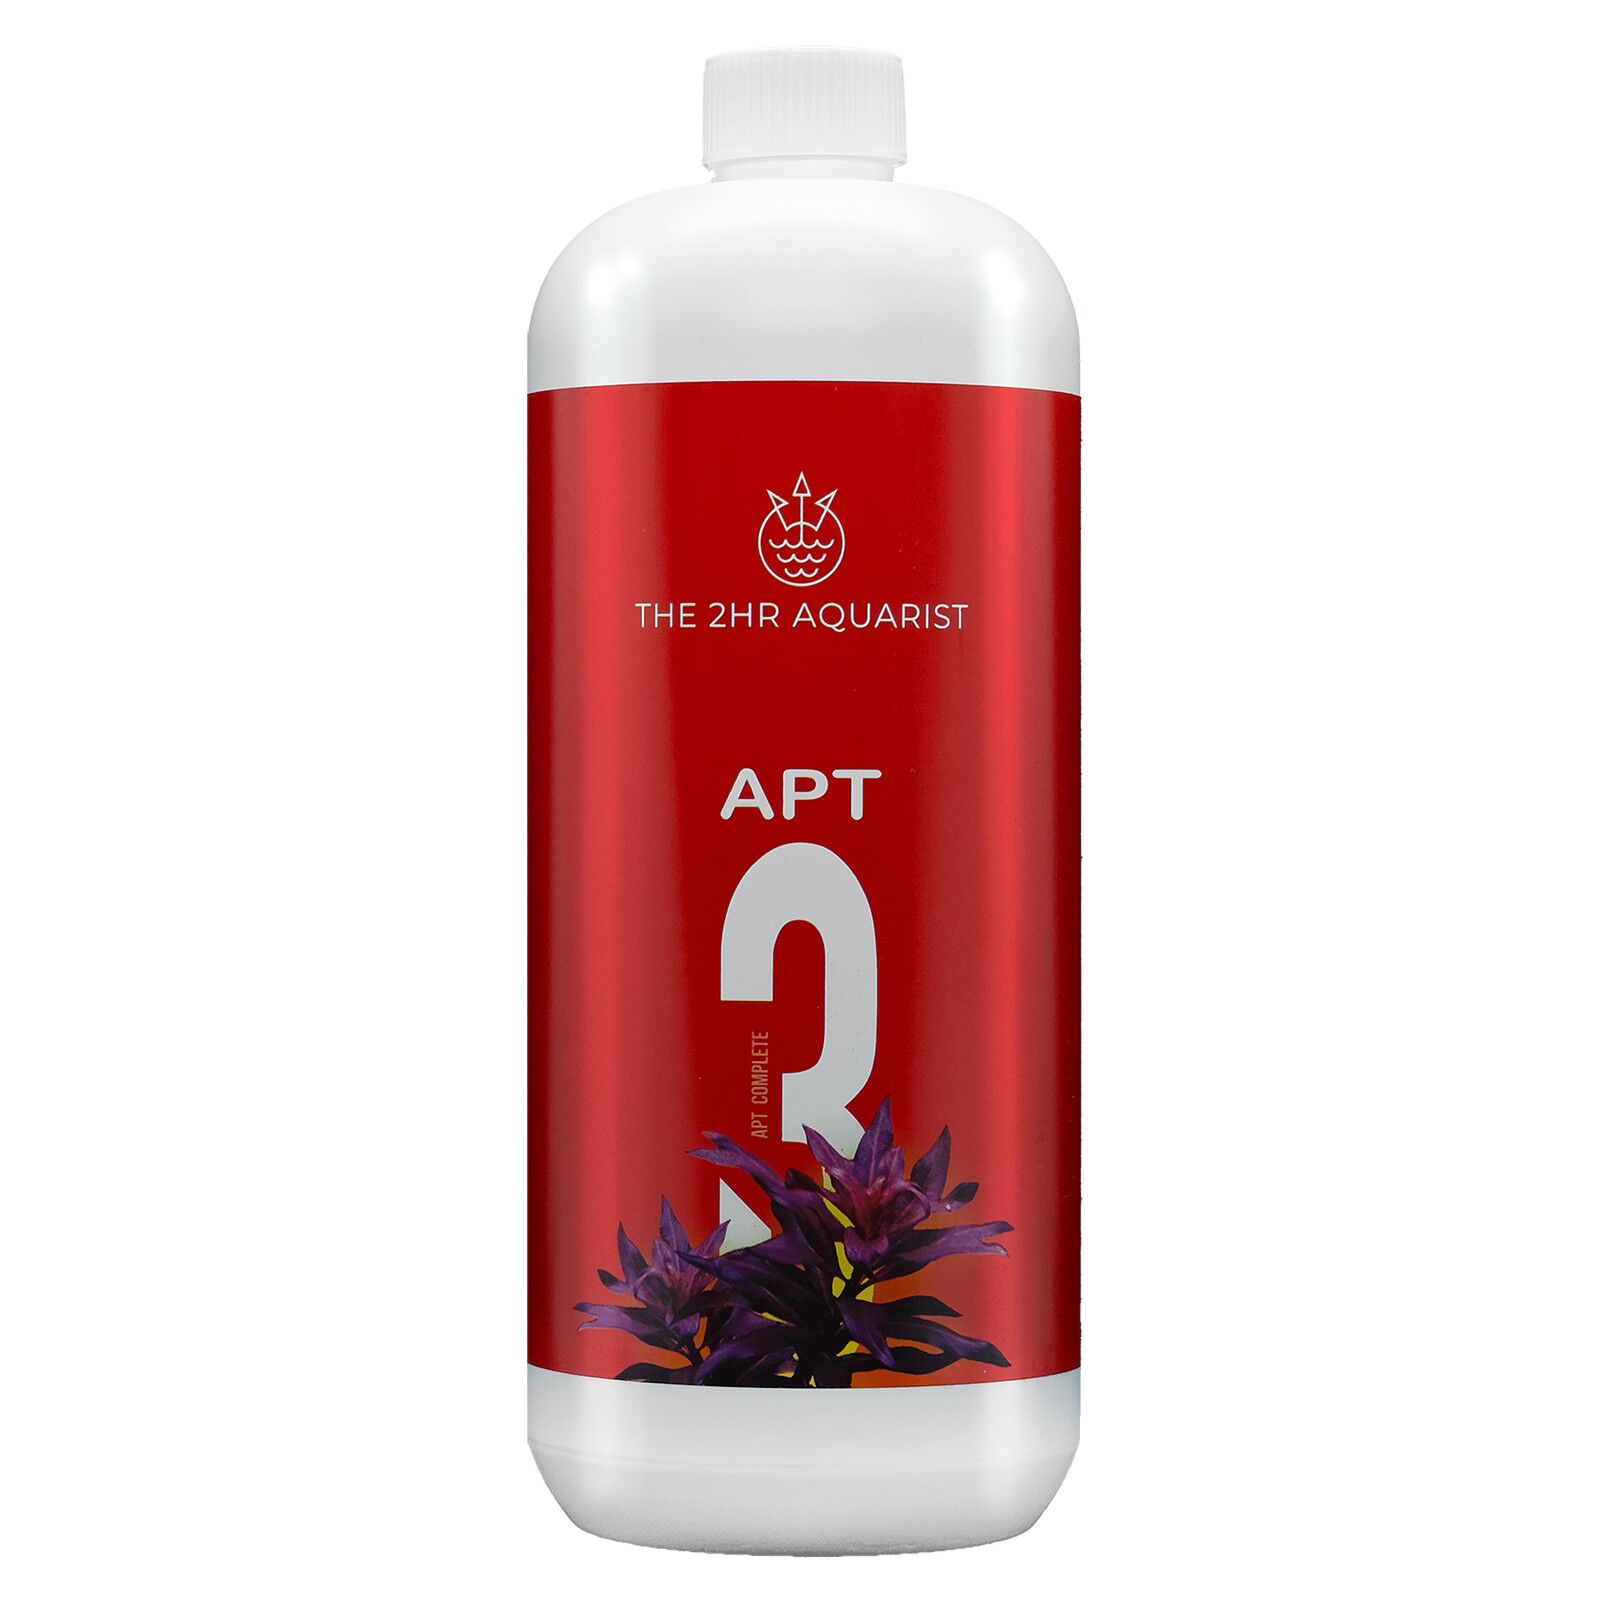 2HR Aquarist - APT 3/Complete - 300 ml | Aquasabi - Aquascaping Shop